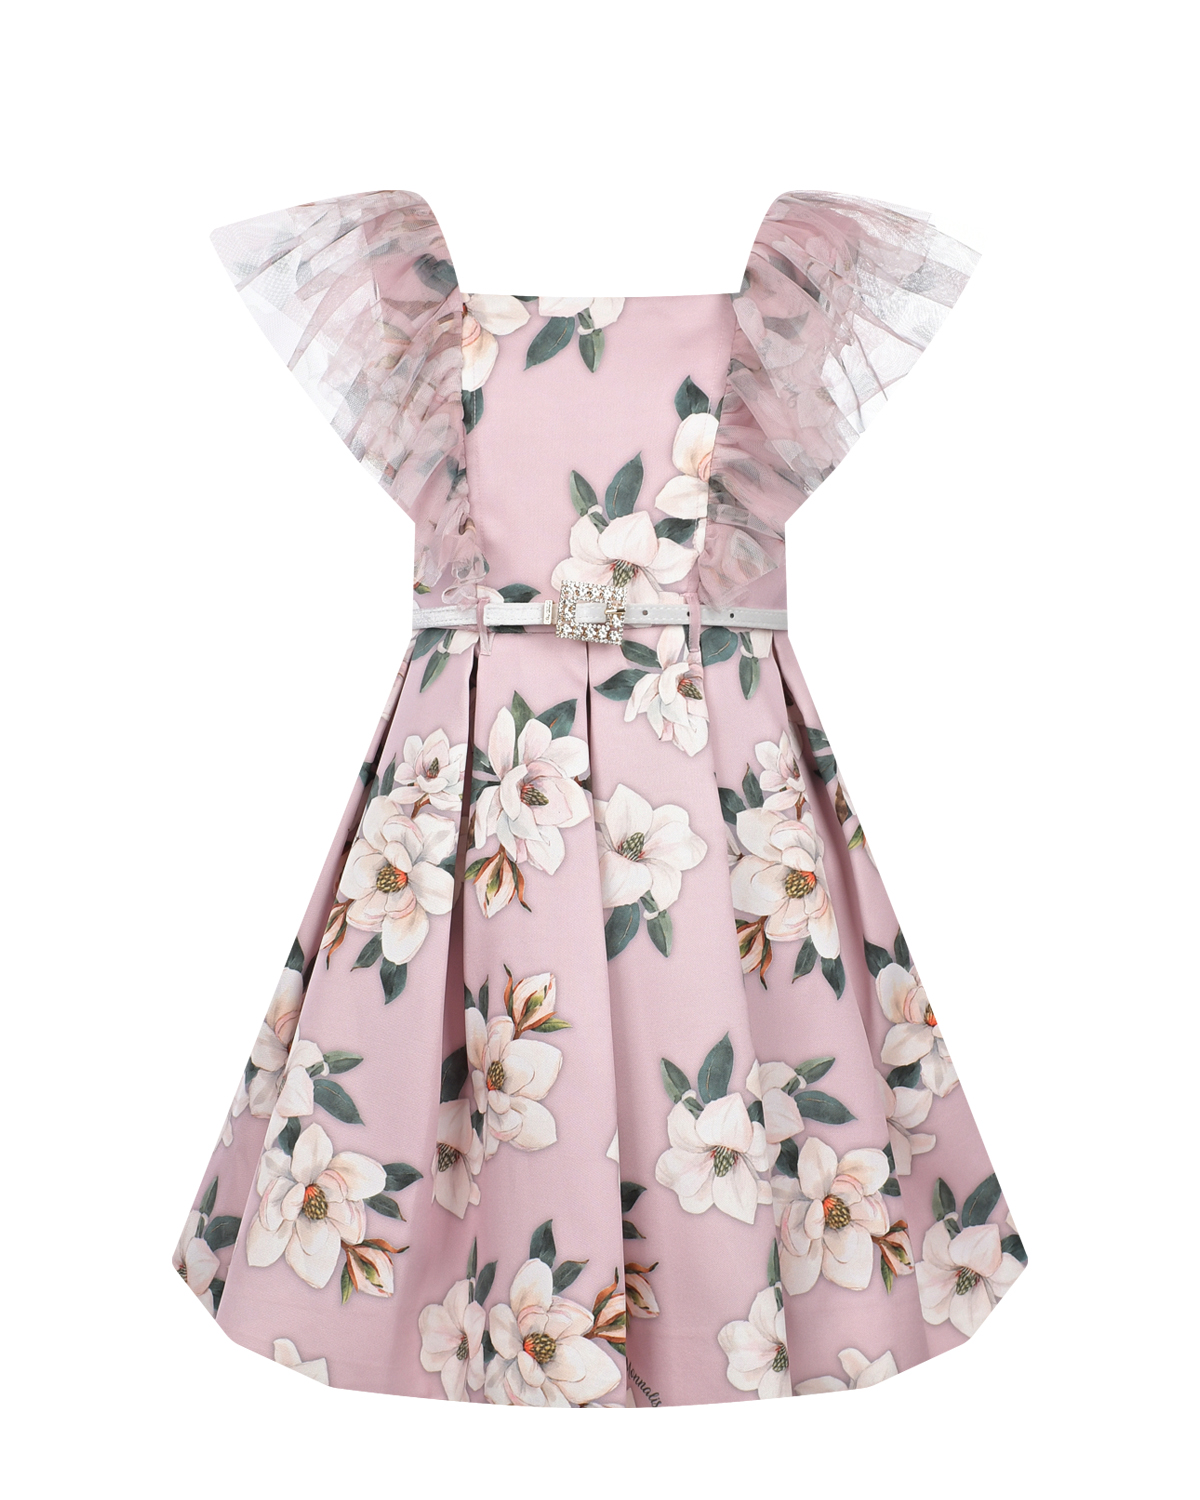 Розовое платье с цветочным принтом Monnalisa розовое многослойное платье gulliver 158